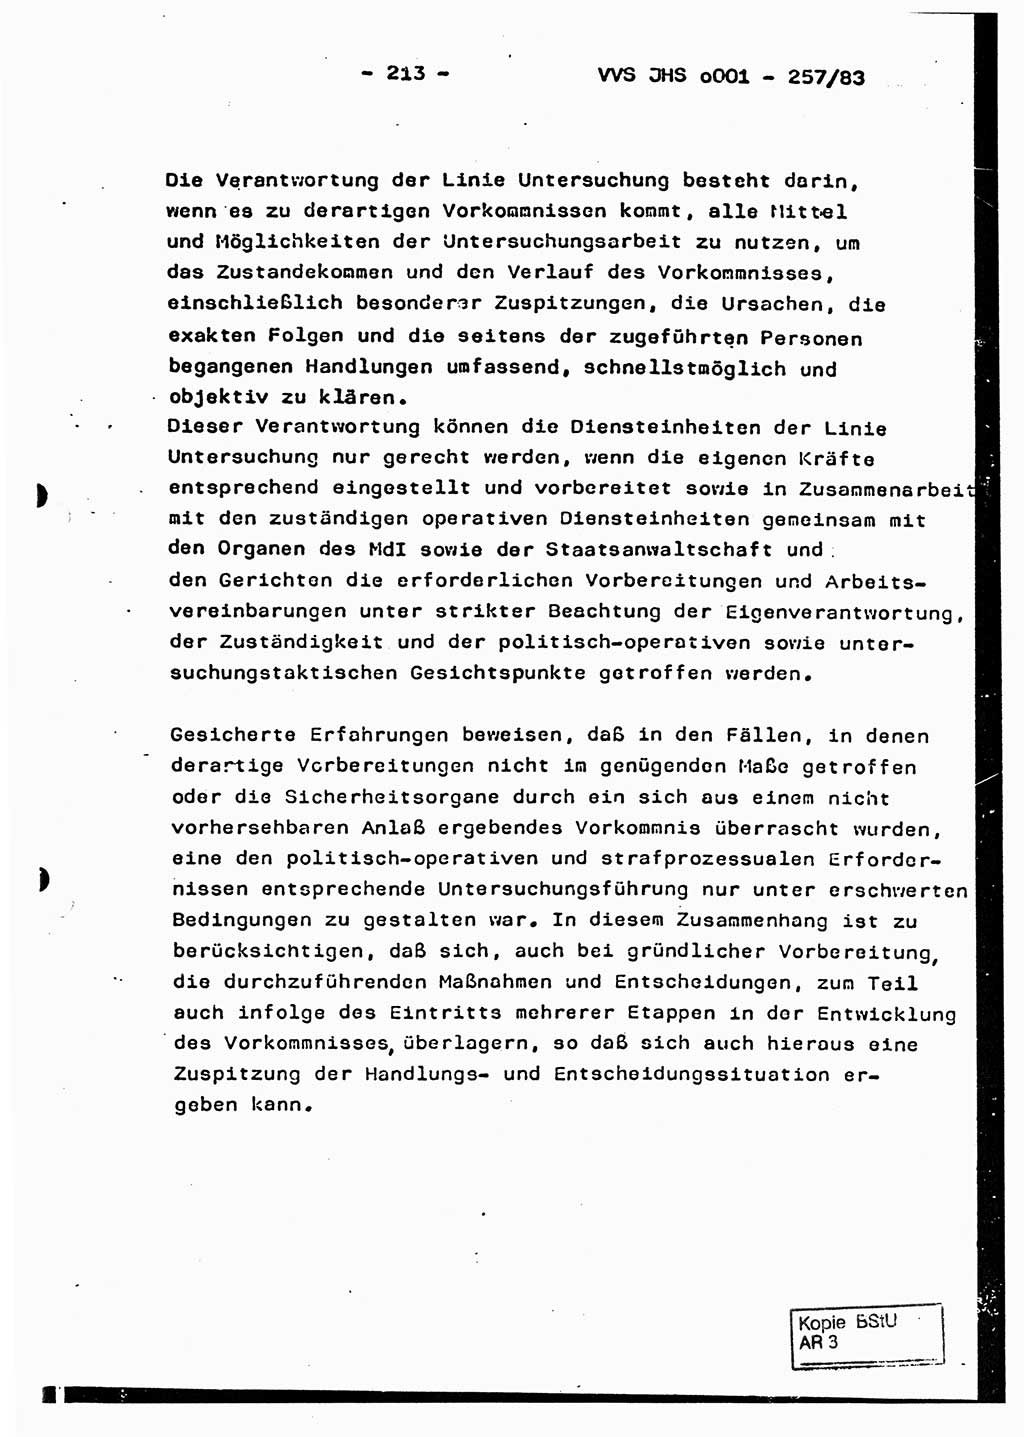 Dissertation, Oberst Helmut Lubas (BV Mdg.), Oberstleutnant Manfred Eschberger (HA IX), Oberleutnant Hans-Jürgen Ludwig (JHS), Ministerium für Staatssicherheit (MfS) [Deutsche Demokratische Republik (DDR)], Juristische Hochschule (JHS), Vertrauliche Verschlußsache (VVS) o001-257/83, Potsdam 1983, Seite 213 (Diss. MfS DDR JHS VVS o001-257/83 1983, S. 213)